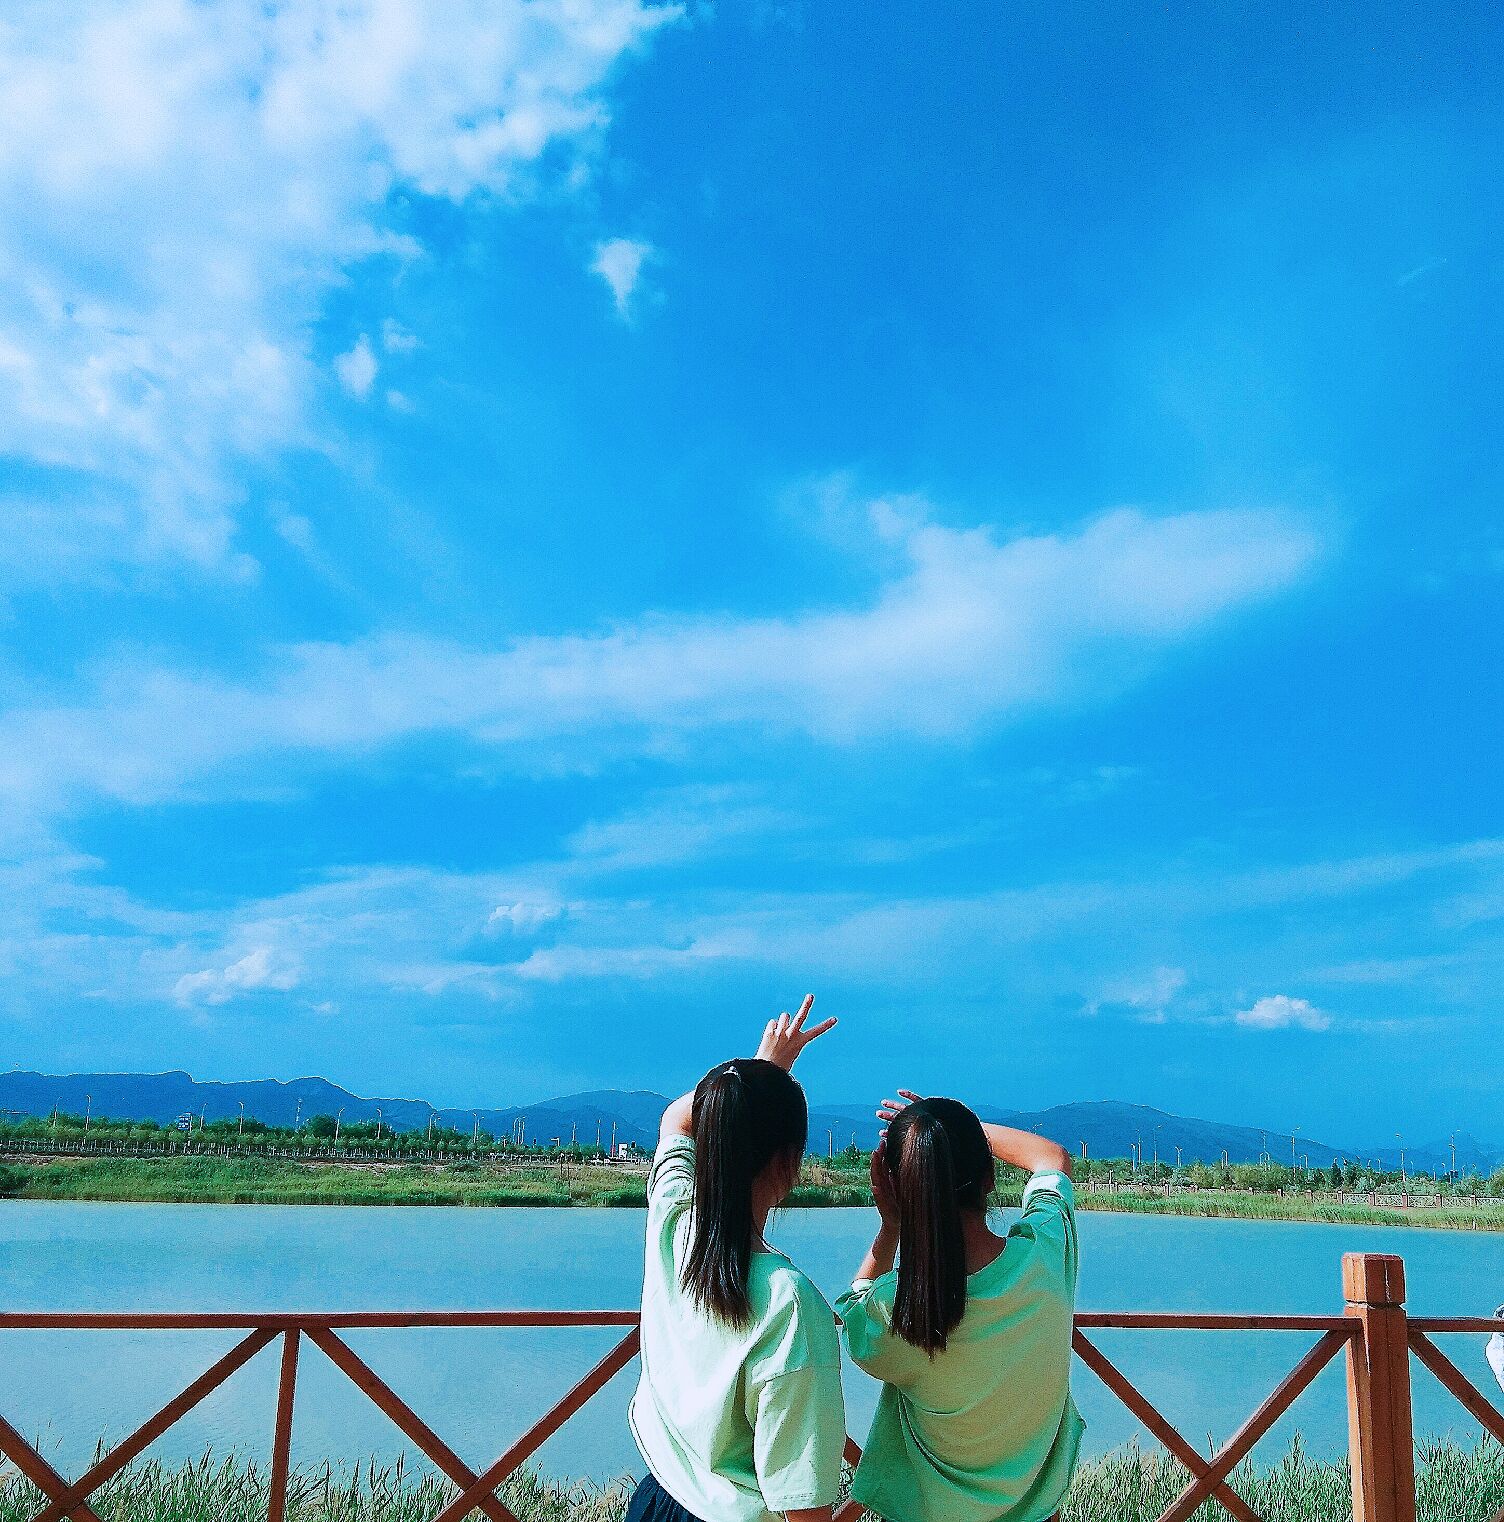 【滨州摄影师2020】记录感动瞬间，珍惜身边幸福-滨州文联网